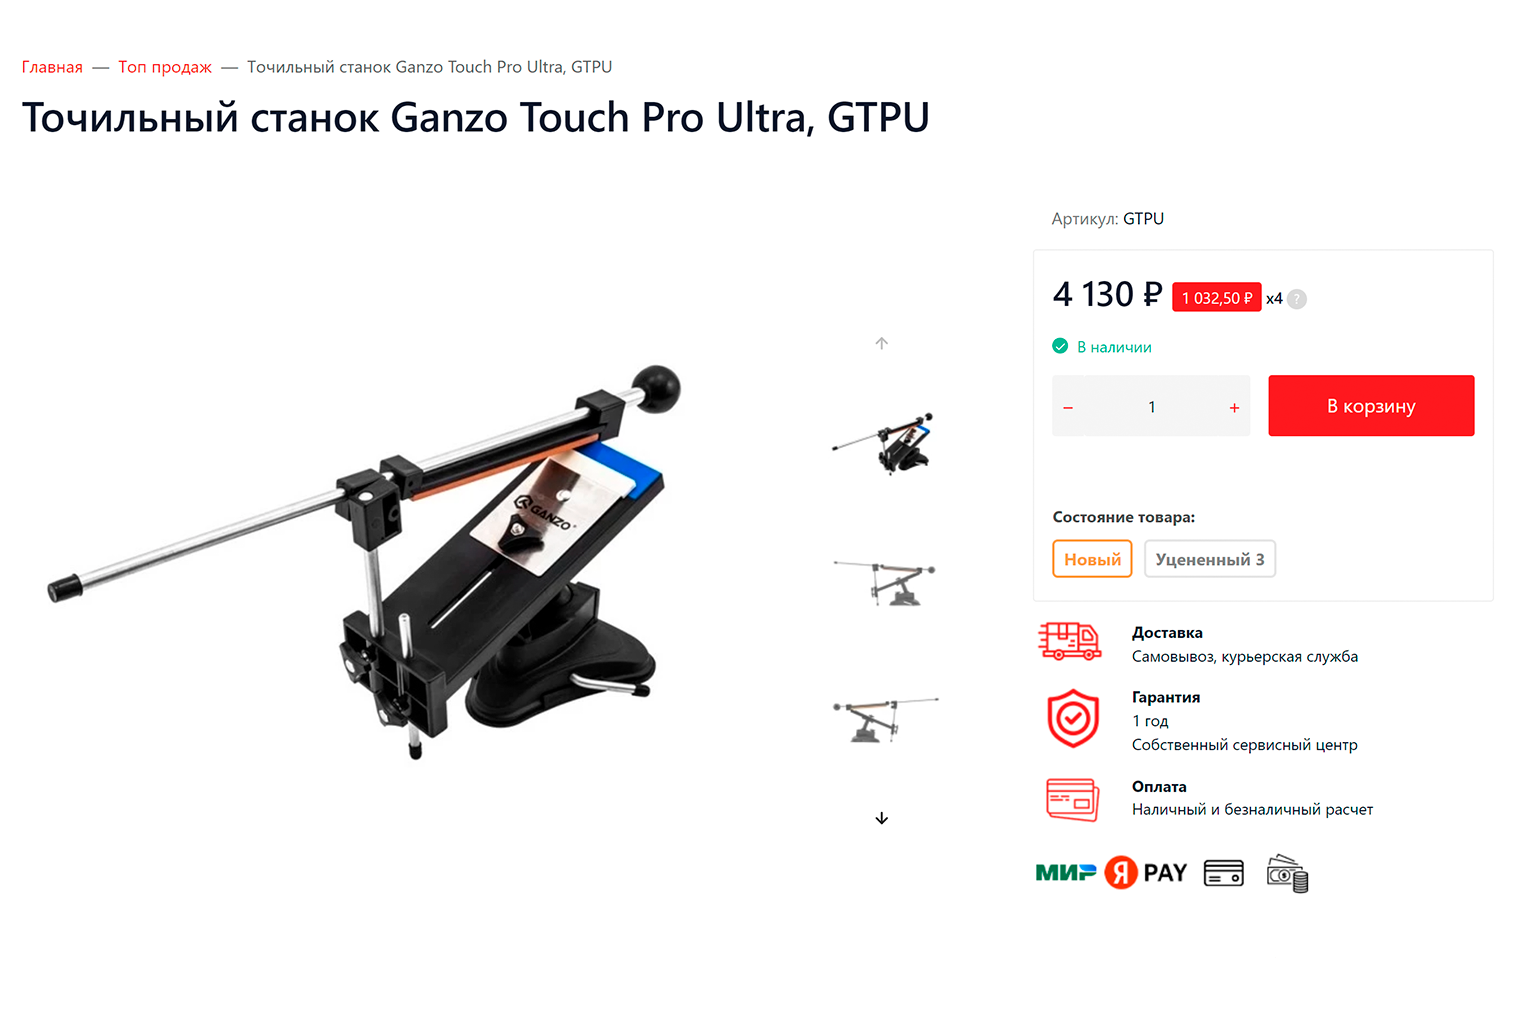 Механический станок Touch Pro Ultra от Ganzo можно прикрепить к столу и выбрать угол заточки в зависимости от типа ножа. Источник: ganzo.ru